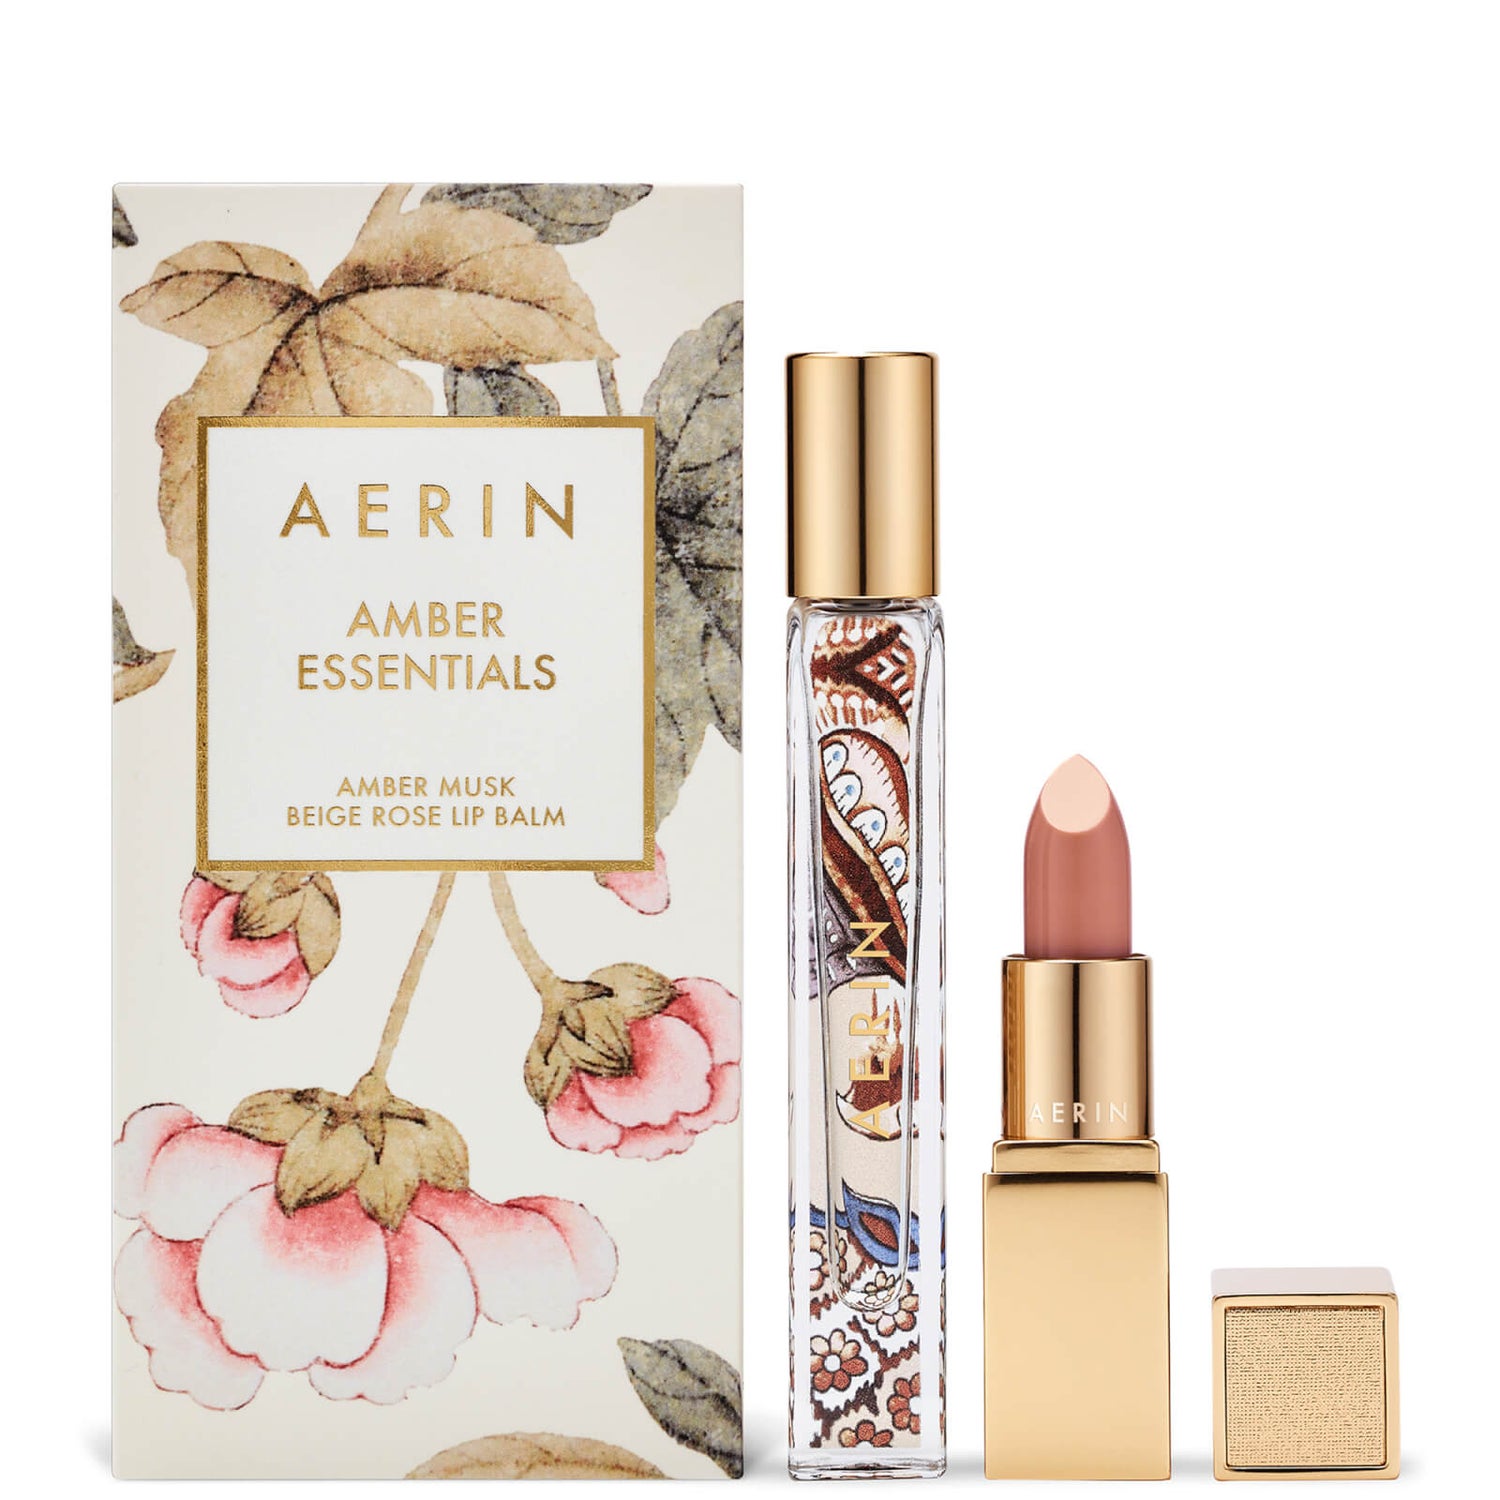 AERIN Amber Musk Eau de Parfum Travel Essentials Set - LOOKFANTASTIC